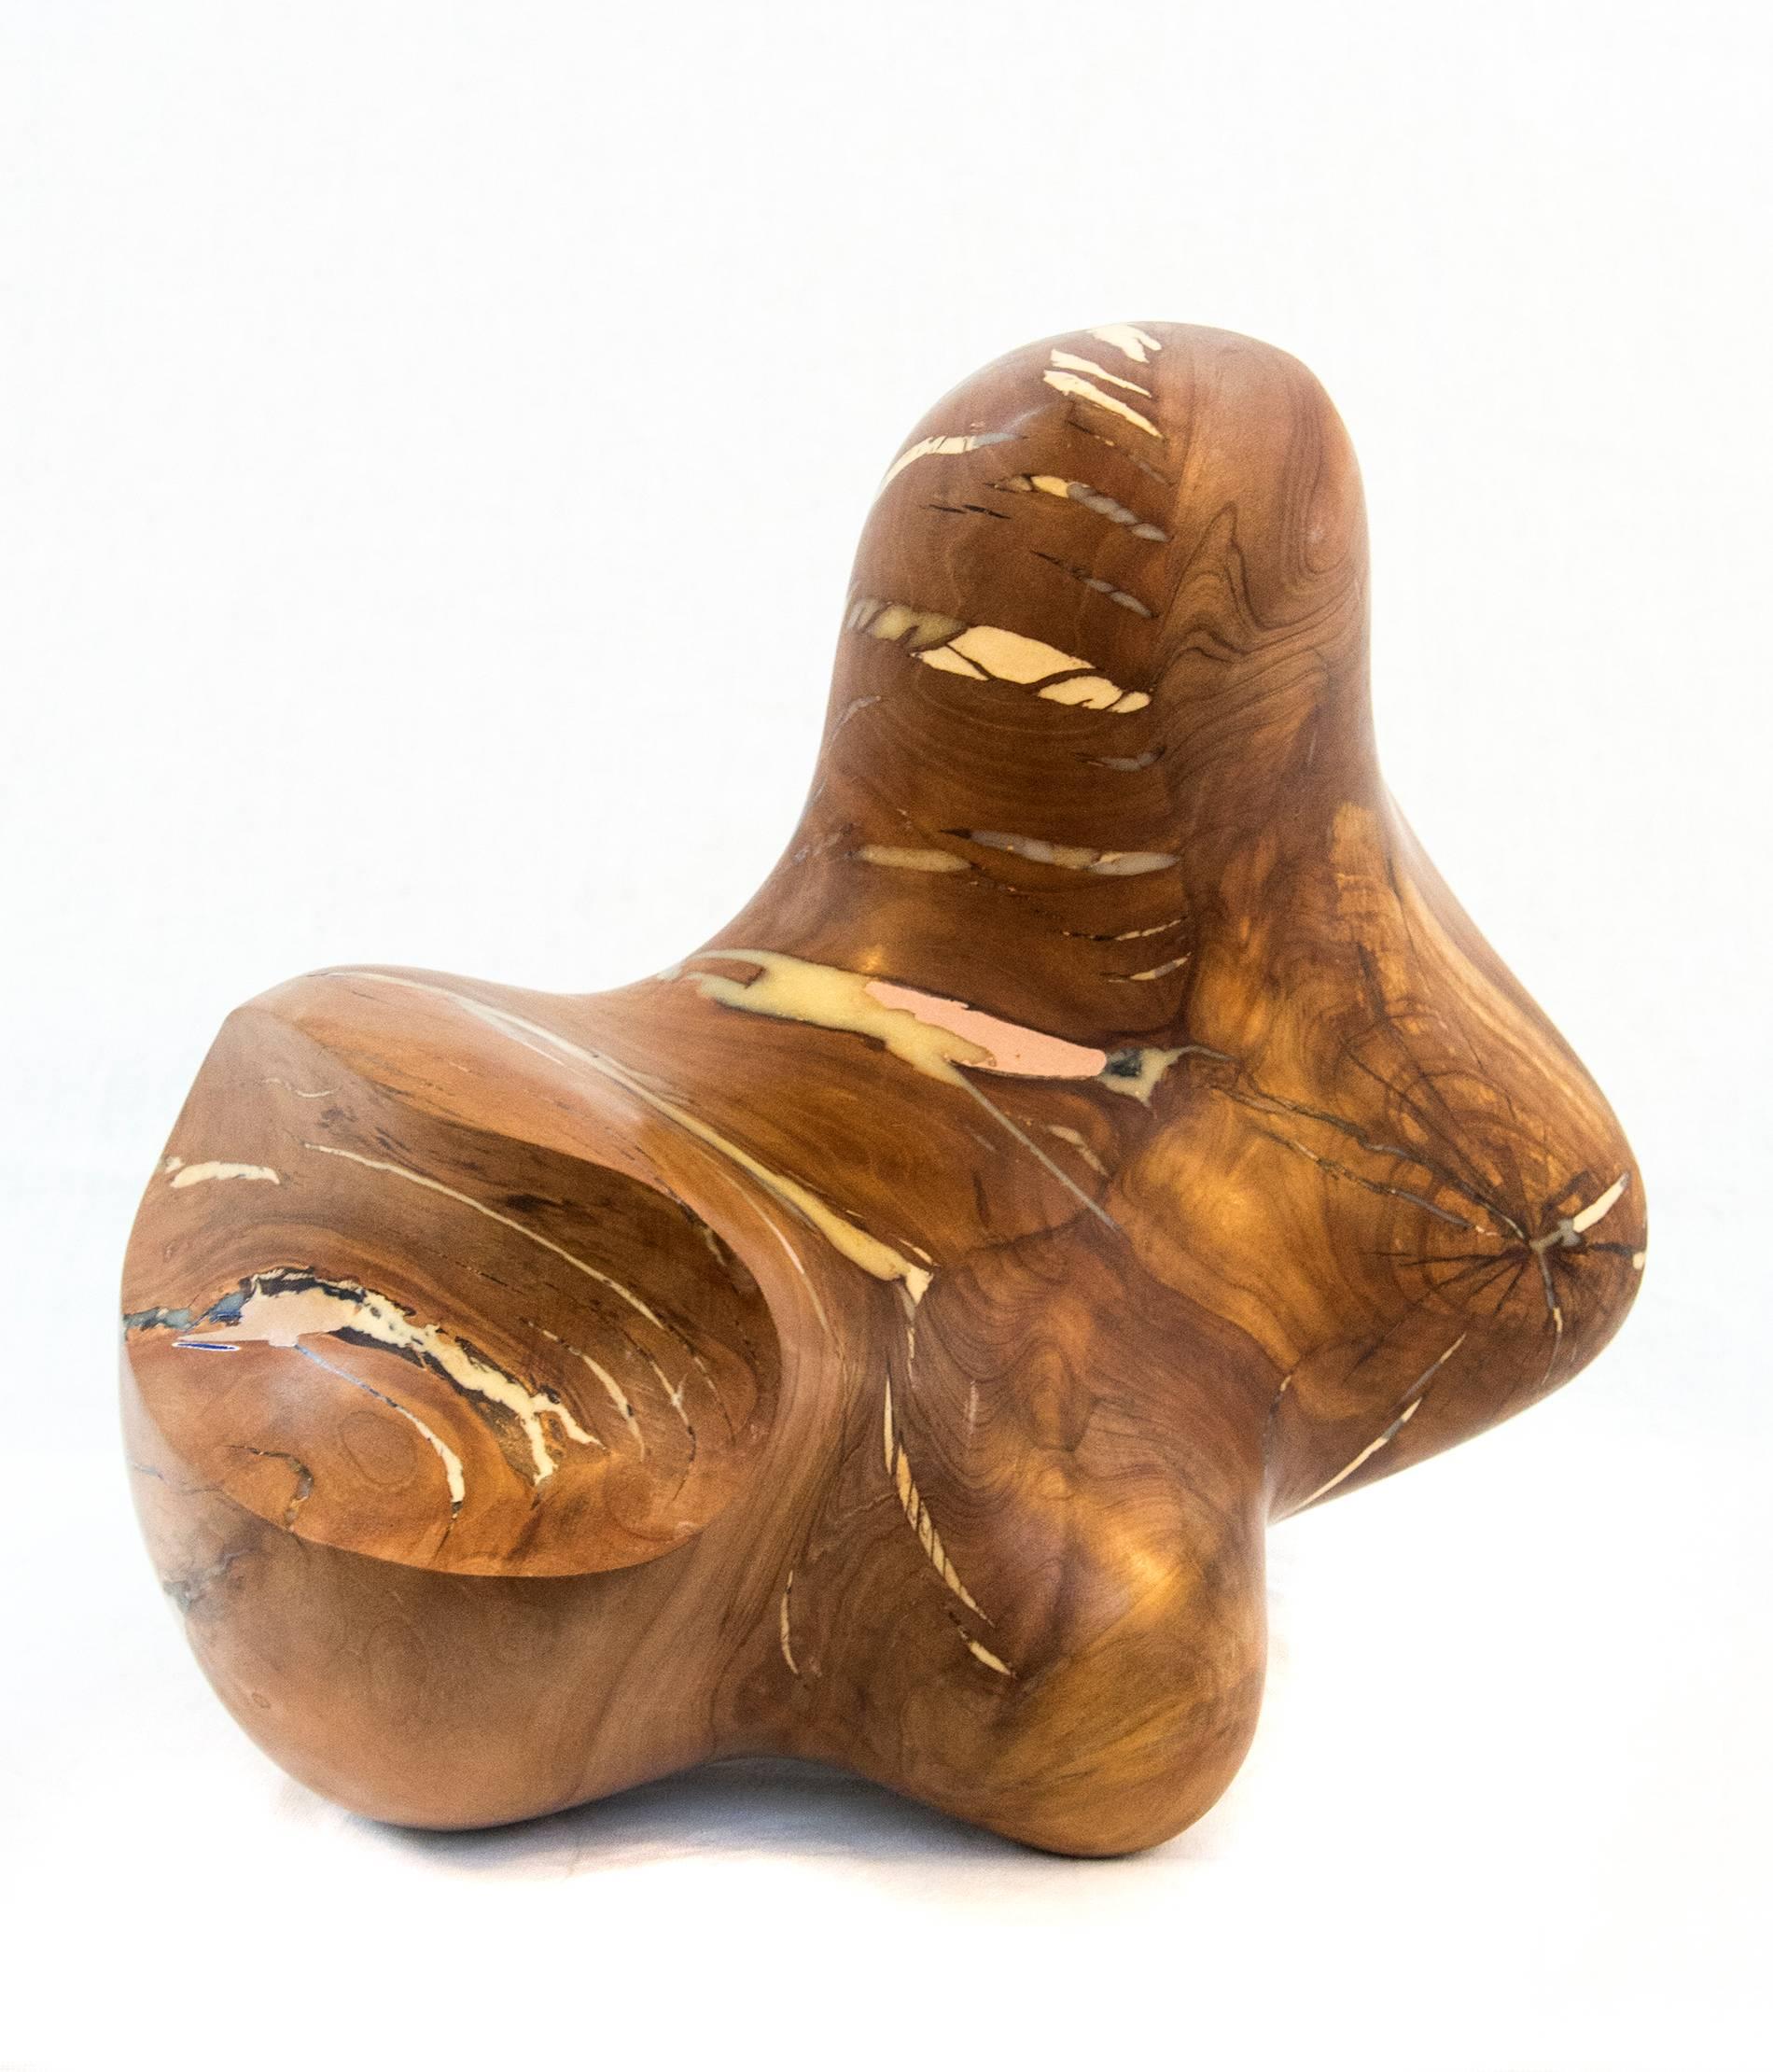 Windfall-Serie Nr. 07 – abstrakte geschnitzte Skulptur aus Naturholz, glatt, poliert (Zeitgenössisch), Sculpture, von Shayne Dark